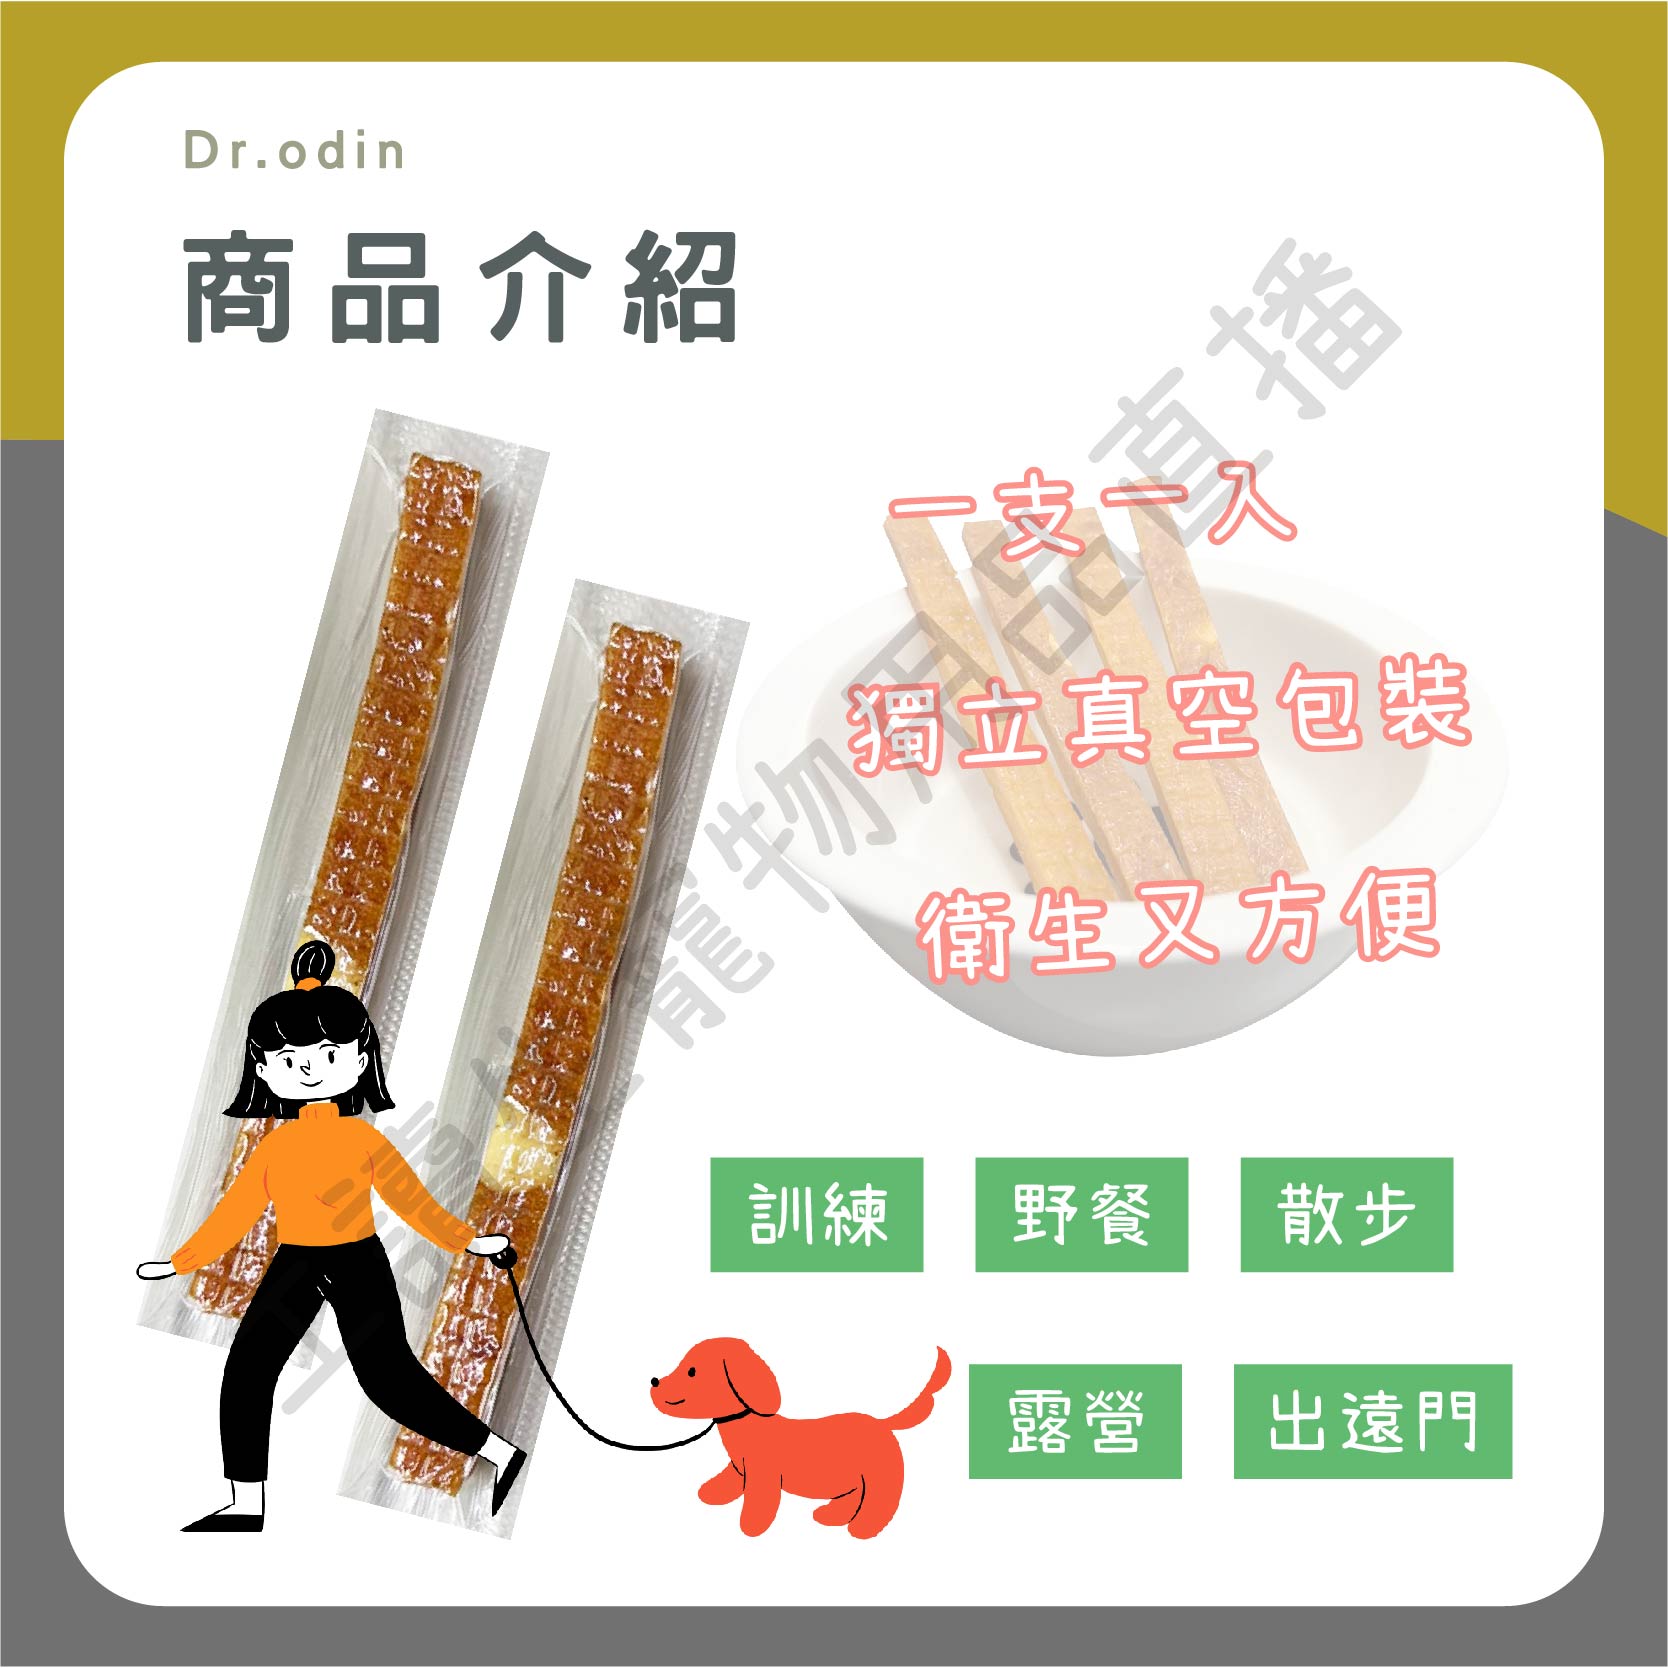 遇見毛寵 Dr.odin 軟嫩筷子多汁 原味 起司 雞肉條 10g 台灣製造 真空包裝 純肉零食 全齡貓狗